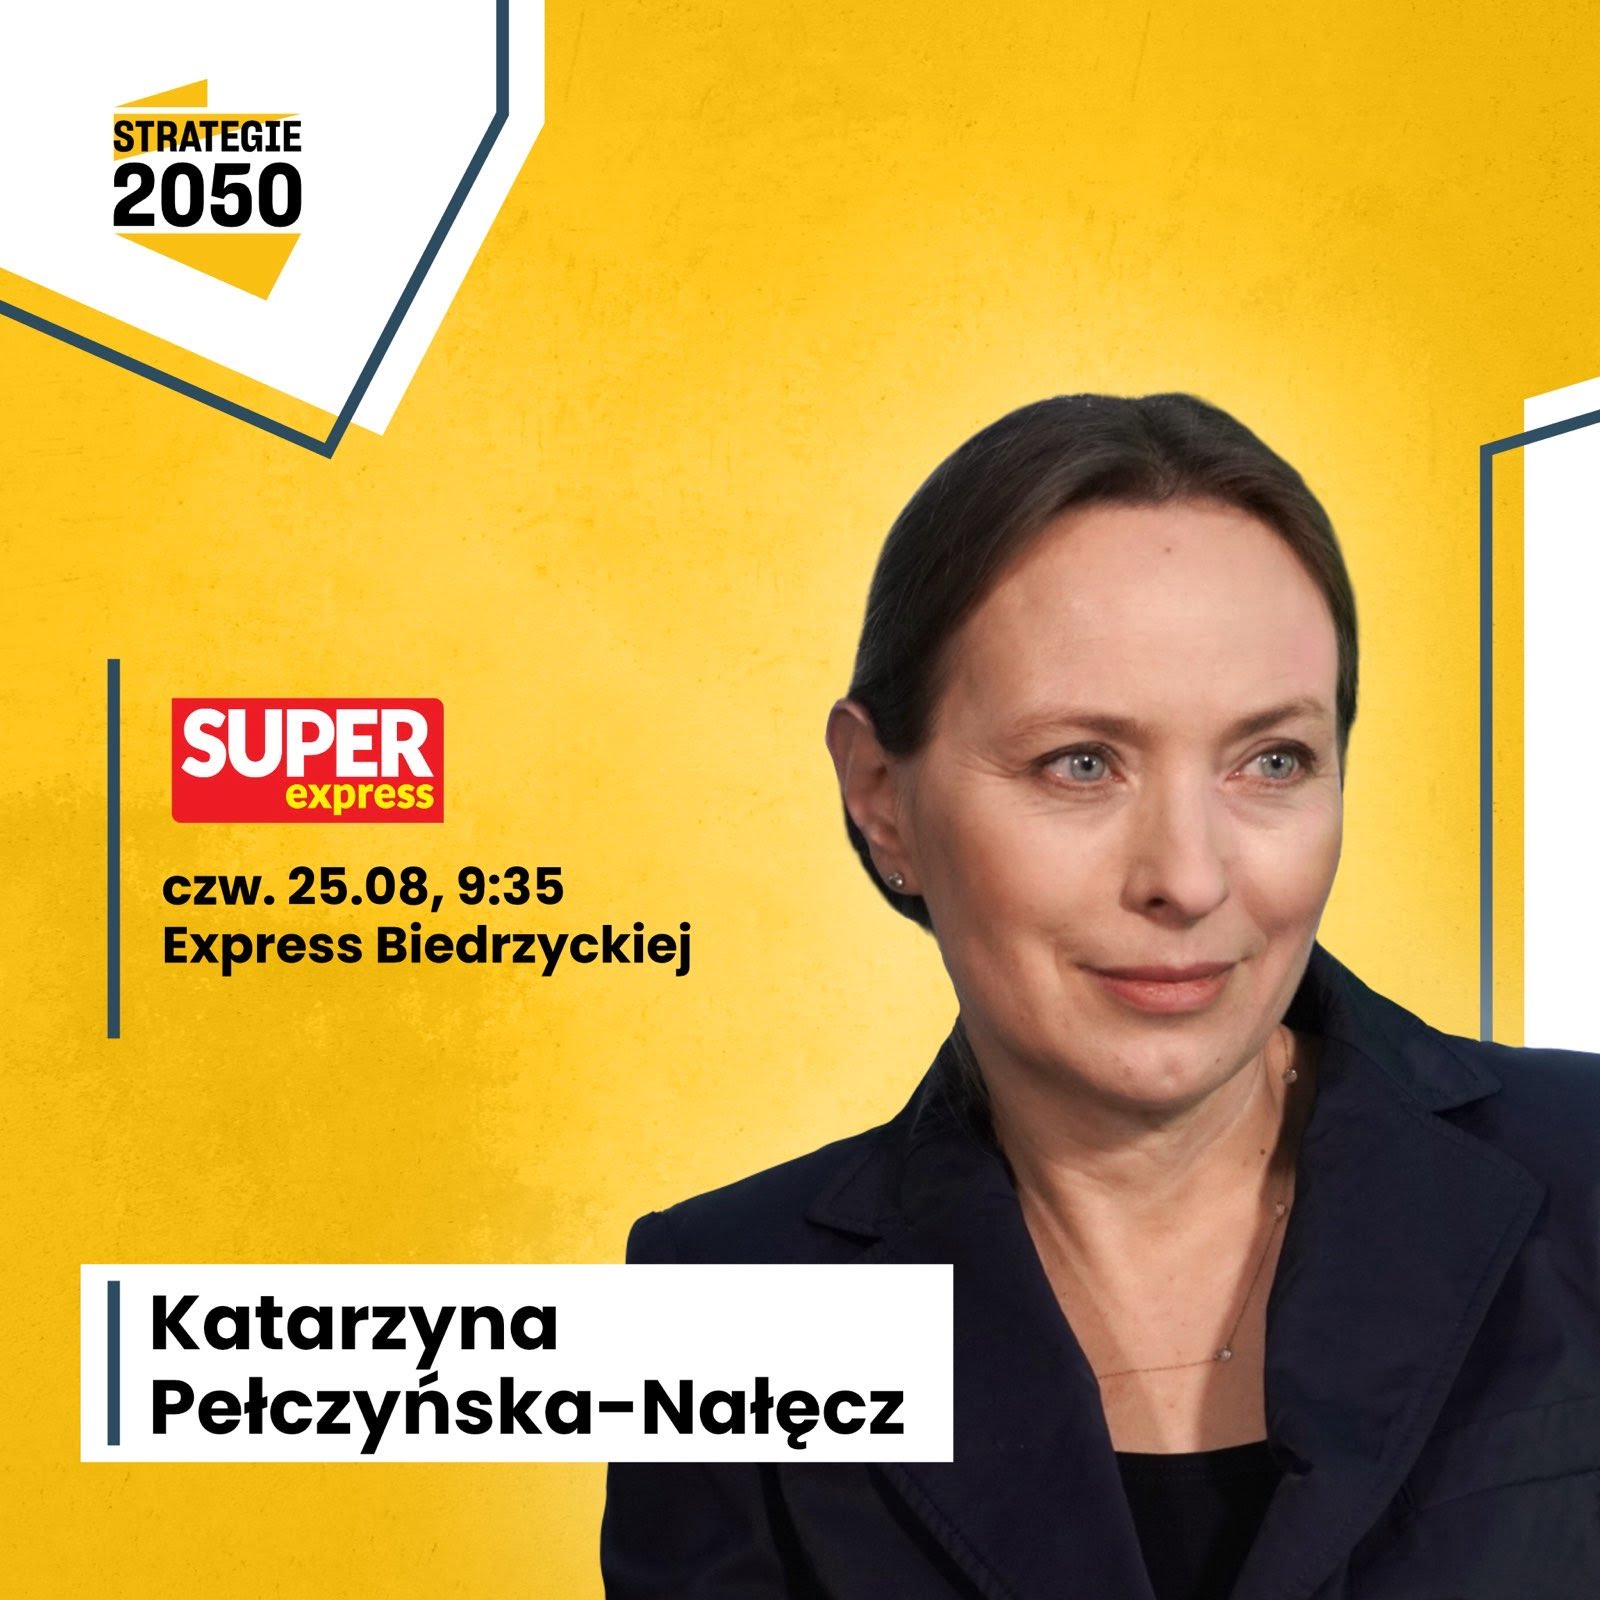 Super Express: Express Biedrzyckiej - Instytut Strategie 2050